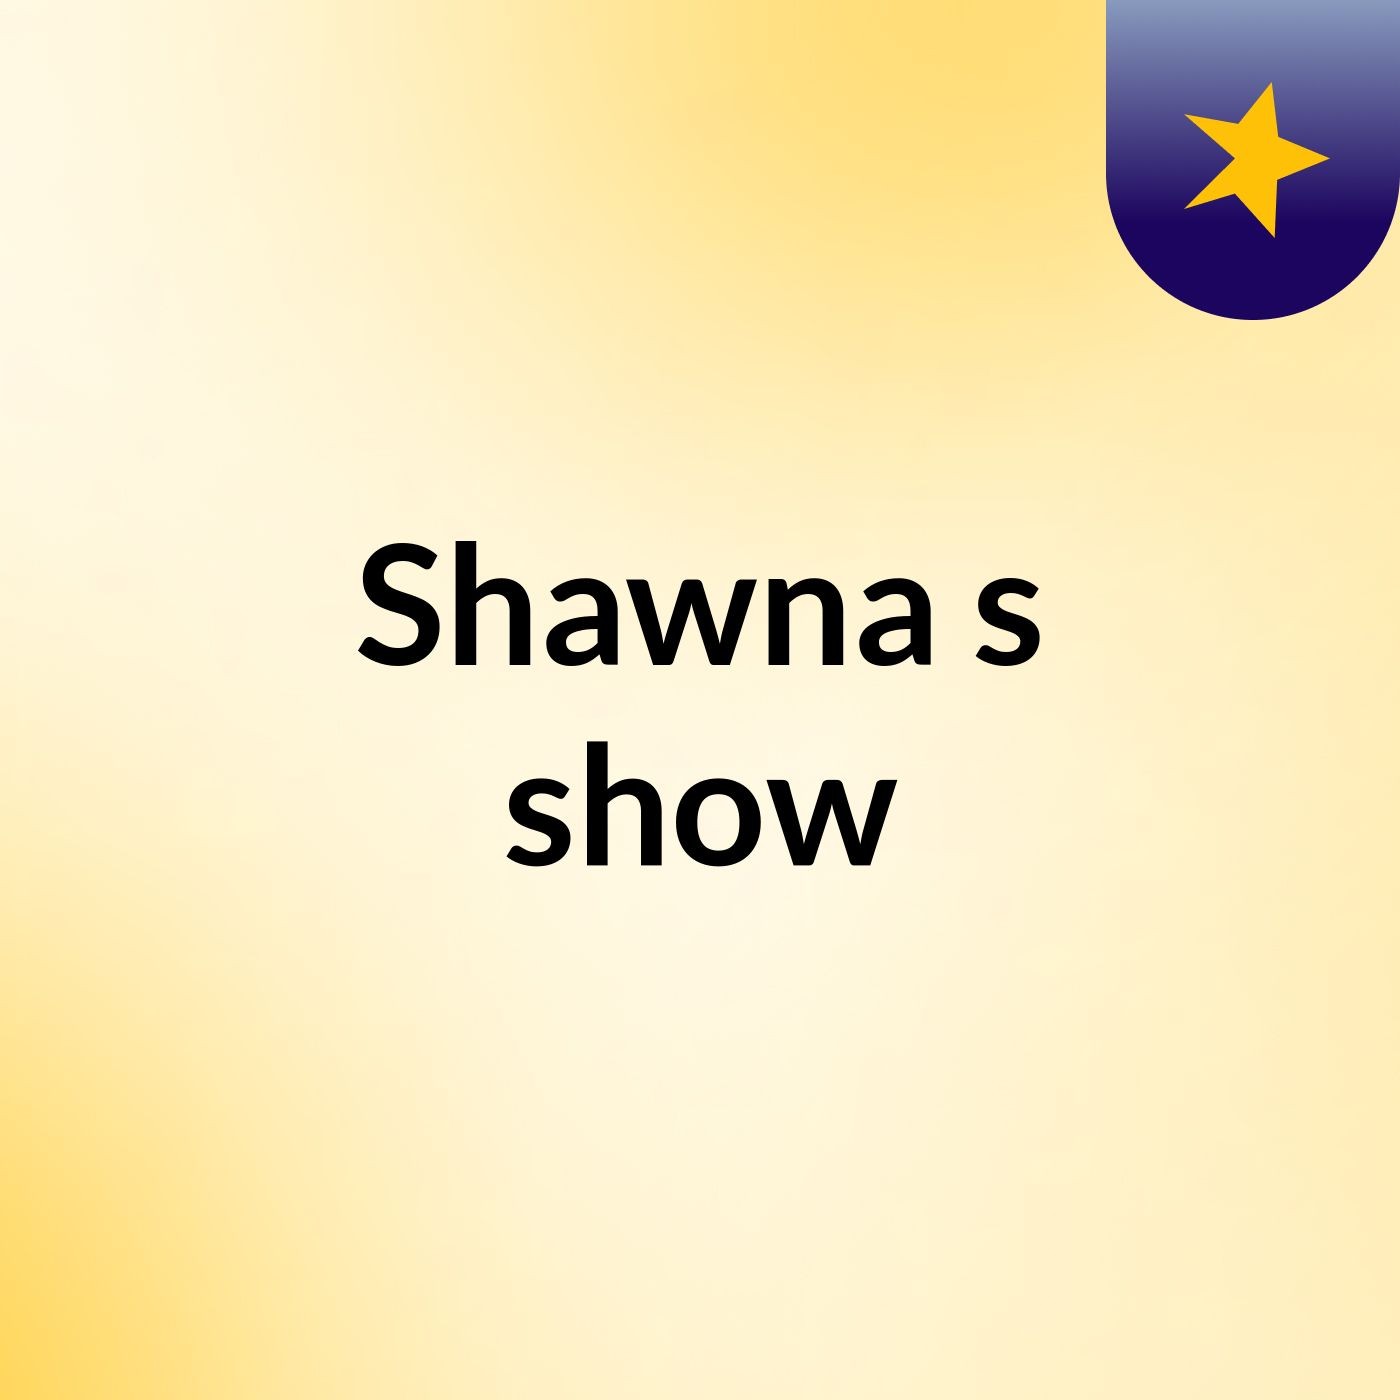 Shawna's show